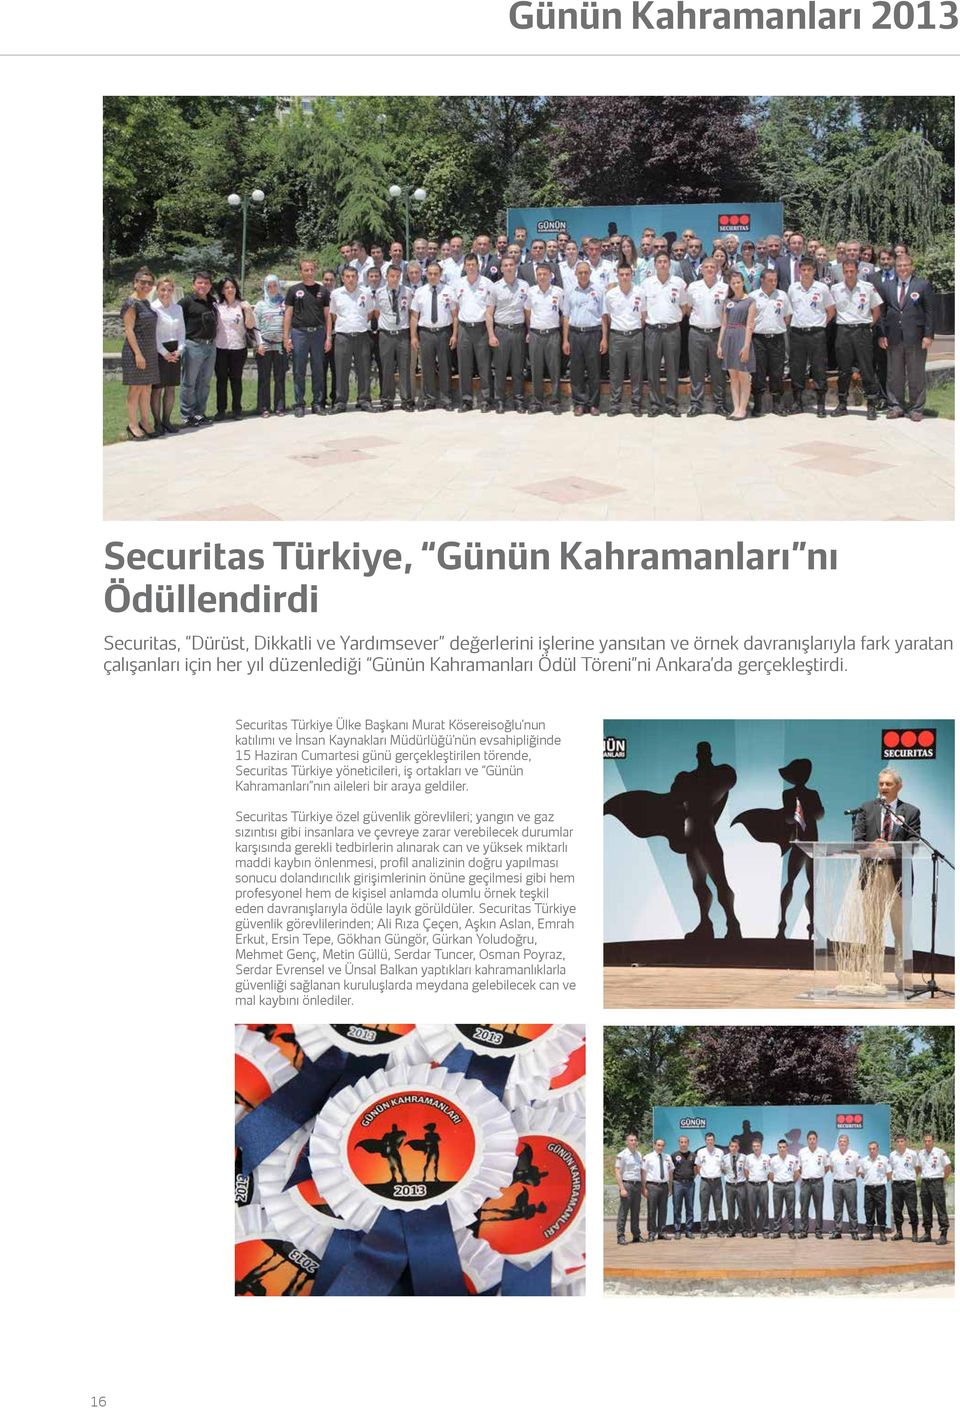 Securitas Türkiye Ülke Başkanı Murat Kösereisoğlu nun katılımı ve İnsan Kaynakları Müdürlüğü nün evsahipliğinde 15 Haziran Cumartesi günü gerçekleştirilen törende, Securitas Türkiye yöneticileri, iş